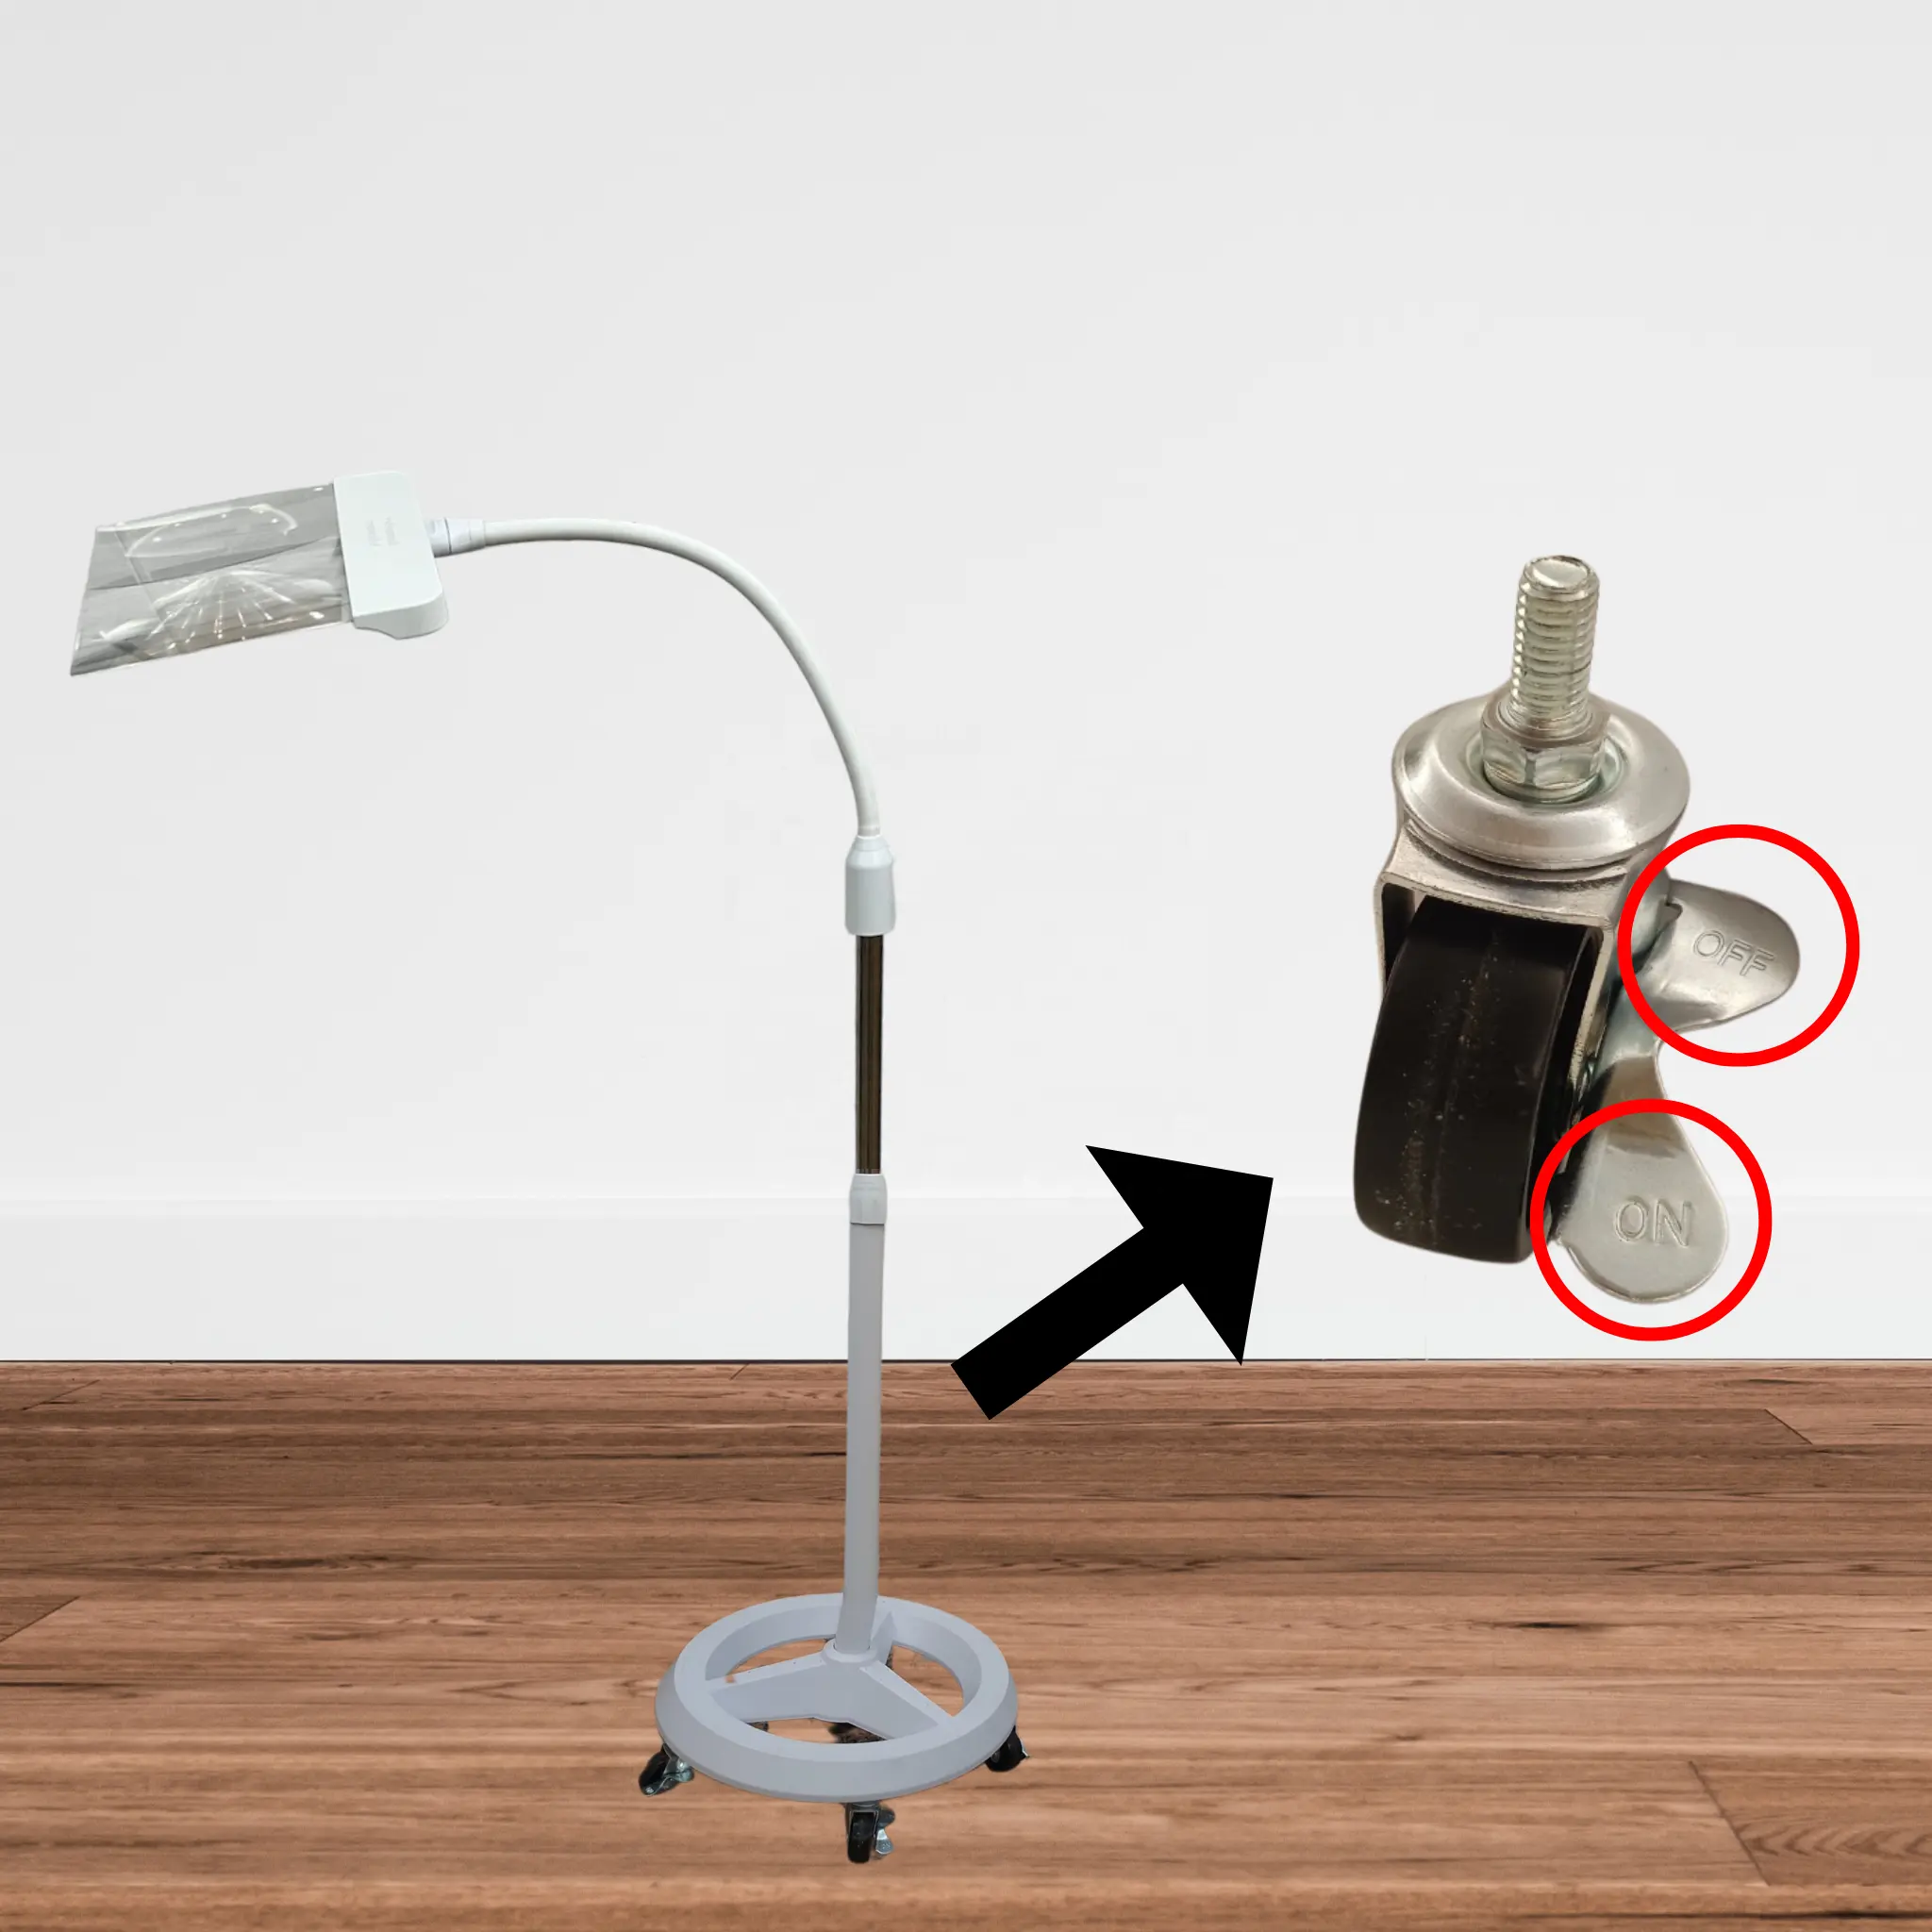 Pembesar lampu 3X, lengan Putar bisa diatur, pembesar LED berdiri lantai, lengan Putar bisa disesuaikan